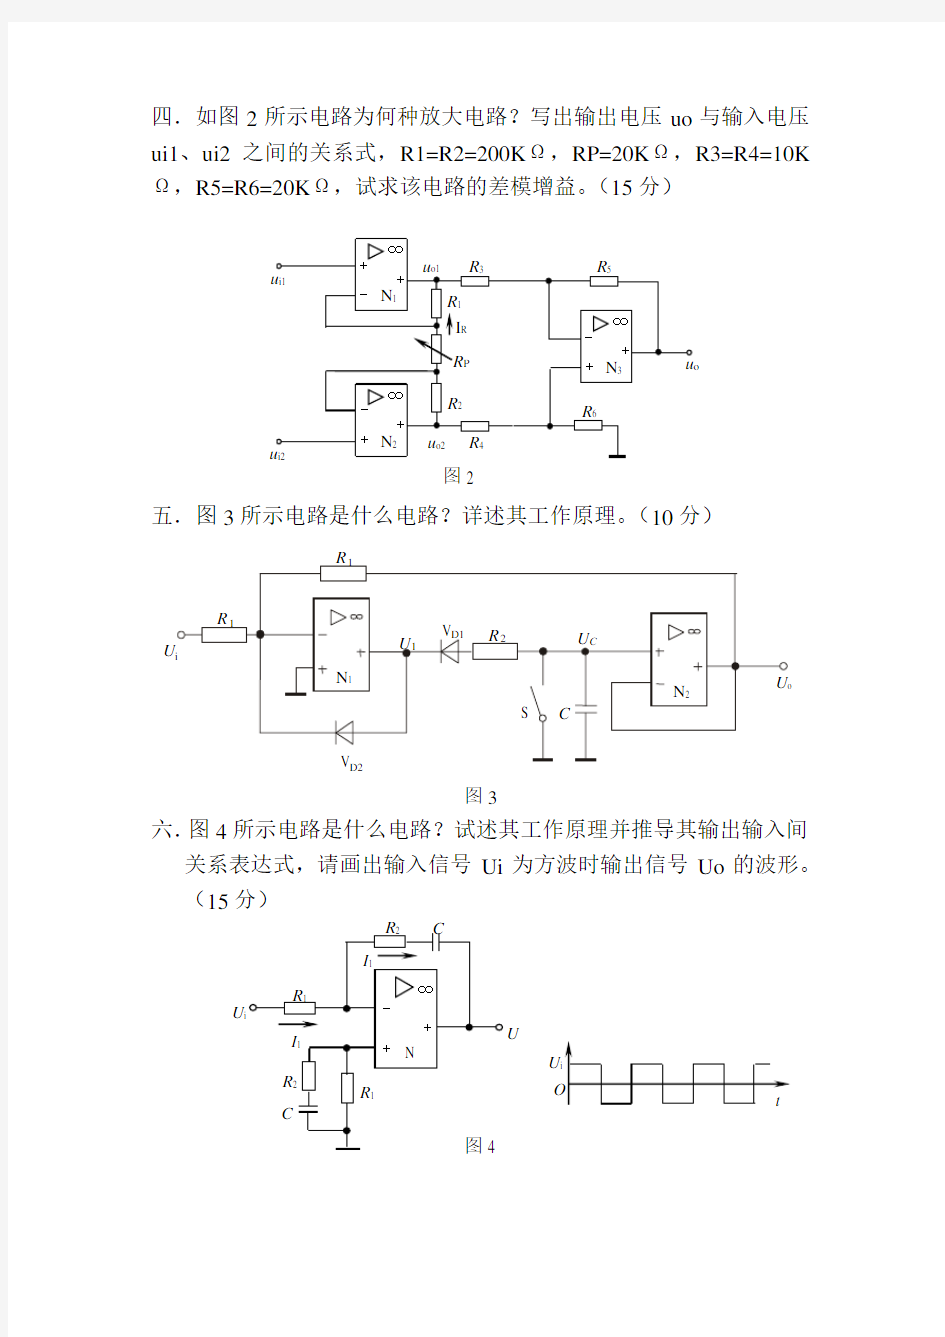 (完整版)四川大学考研测控电路复试试题